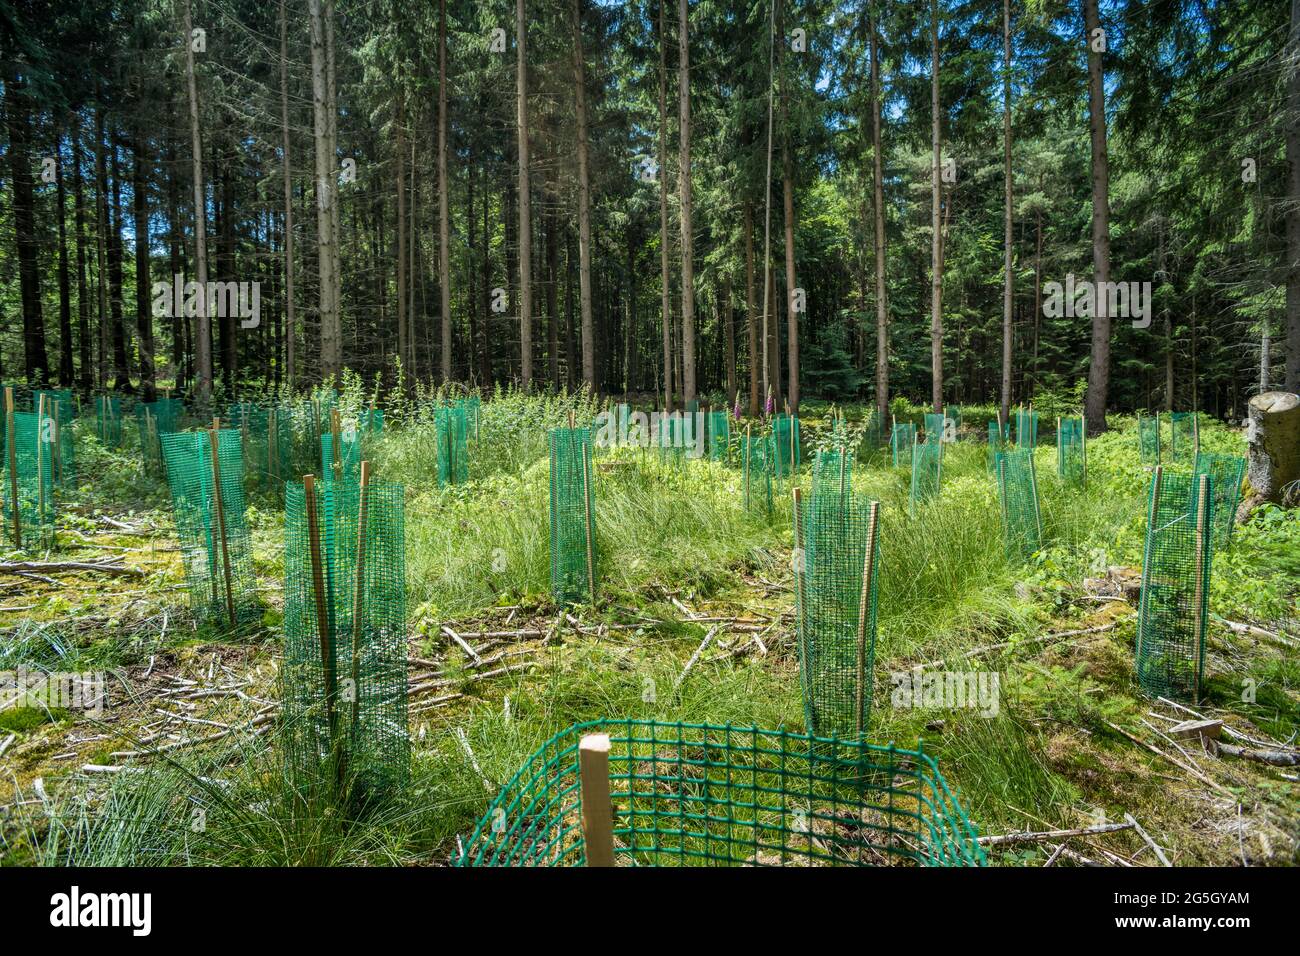 Plastik im Wald, wie es zum Schutz und zur Unterstützung von neu gepflanzten Bäumen verwendet wird, kann zum Problem werden. Es kann sich zersetzen und in den Boden eindringen. Verschmutzung Stockfoto